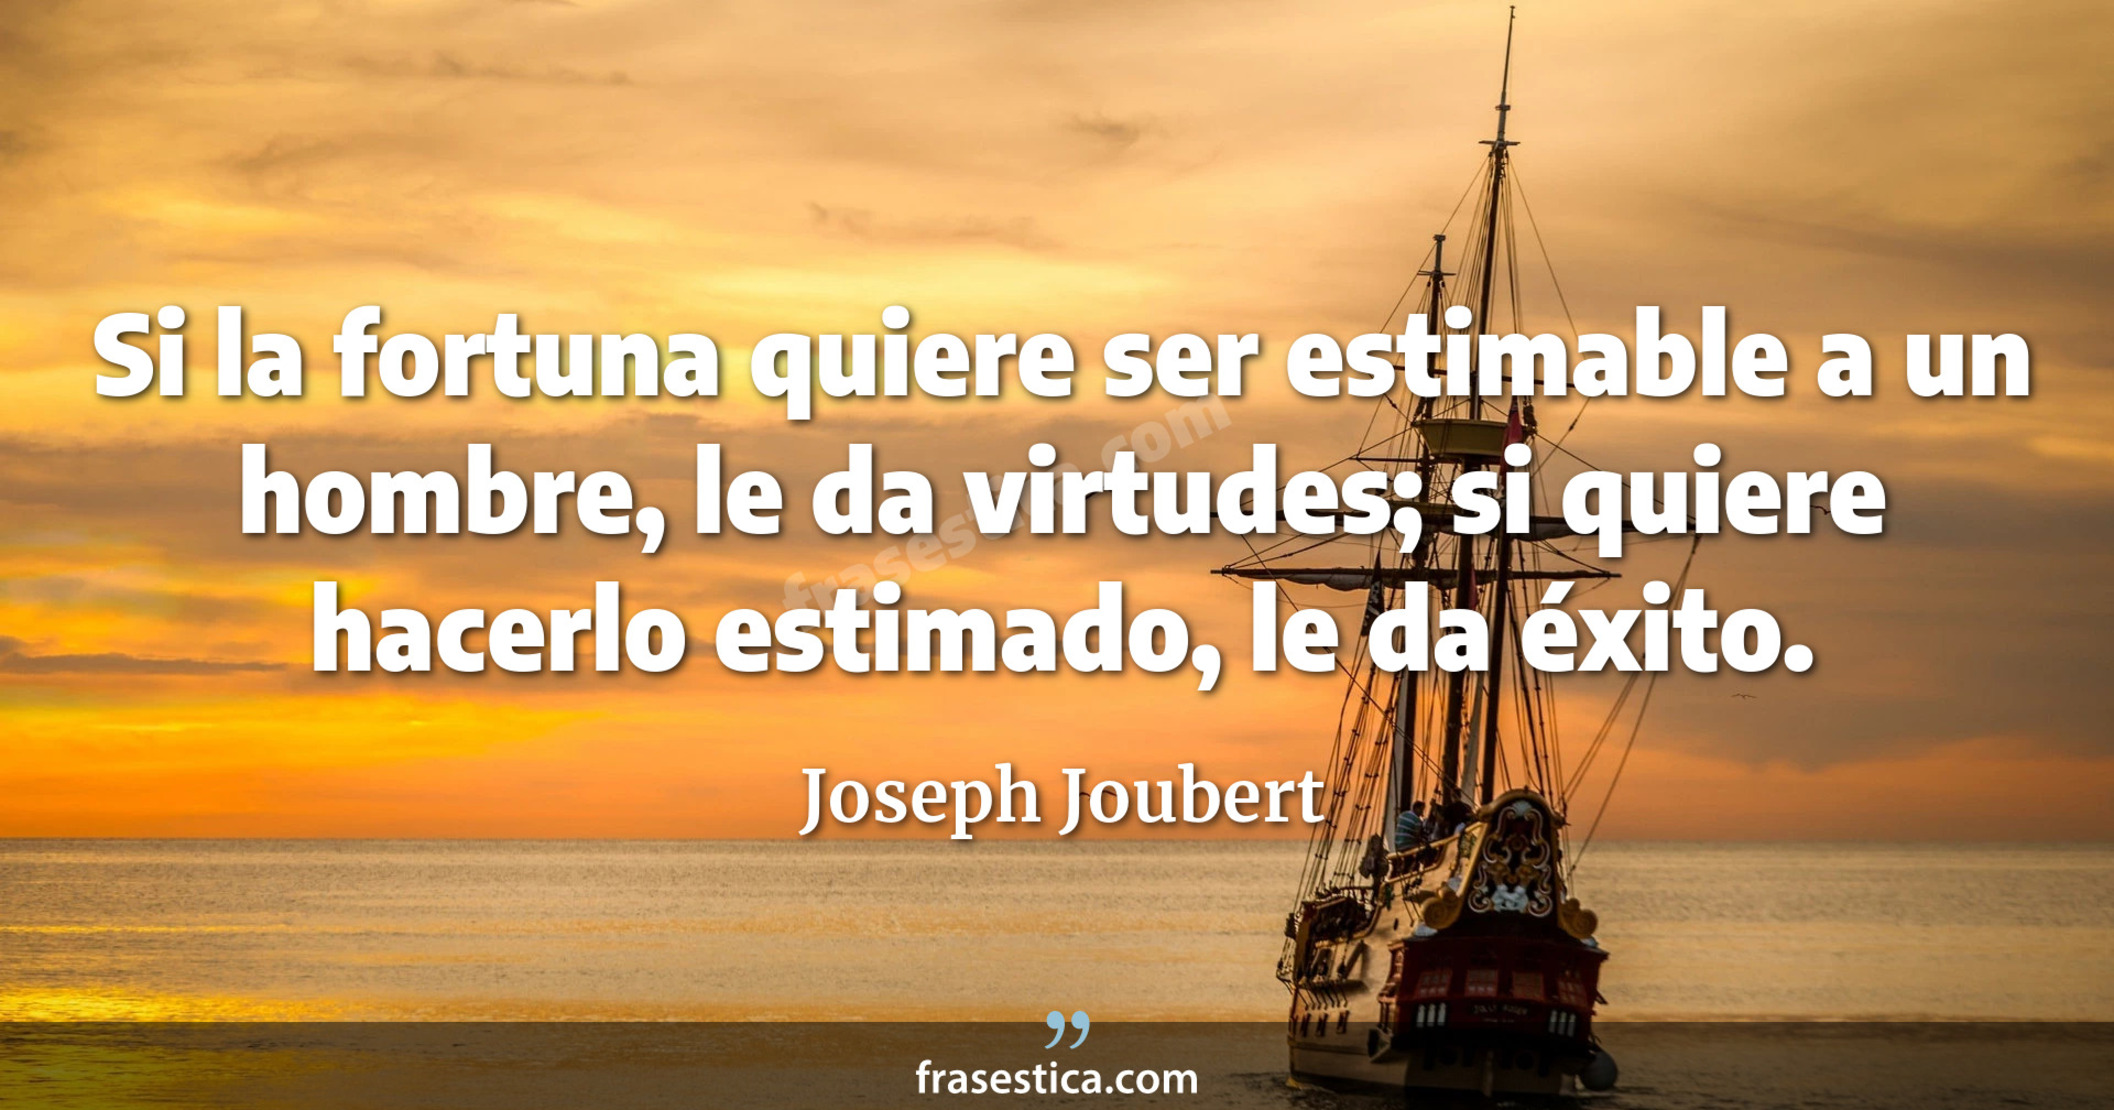 Si la fortuna quiere ser estimable a un hombre, le da virtudes; si quiere hacerlo estimado, le da éxito. - Joseph Joubert